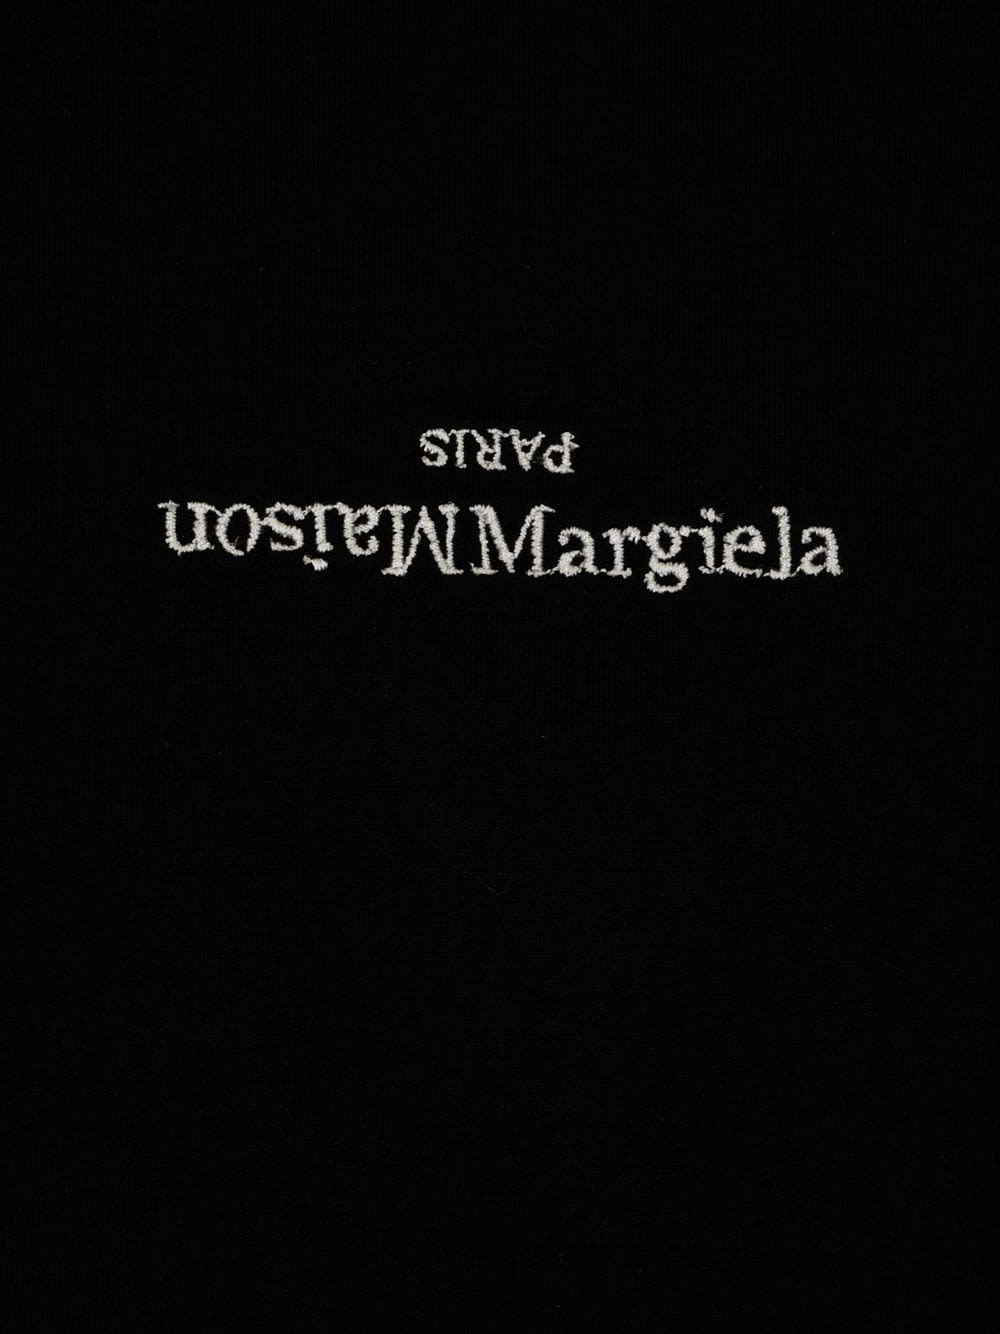 Shop Maison Margiela Black T-shirt